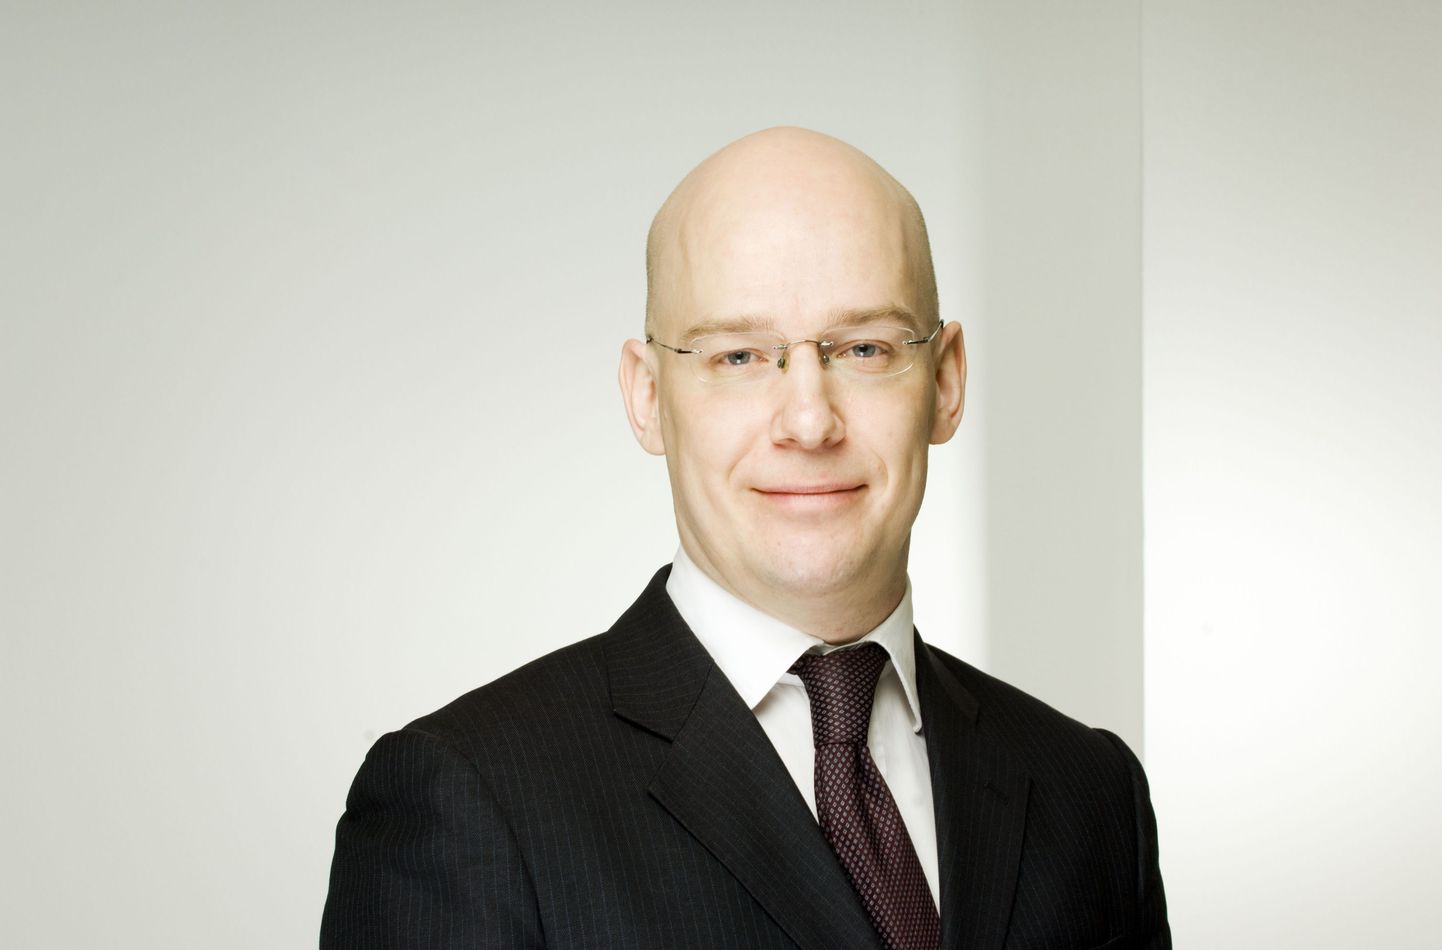 Evli Panga investeerimismeeskonna peastrateeg Peter Lindahl.